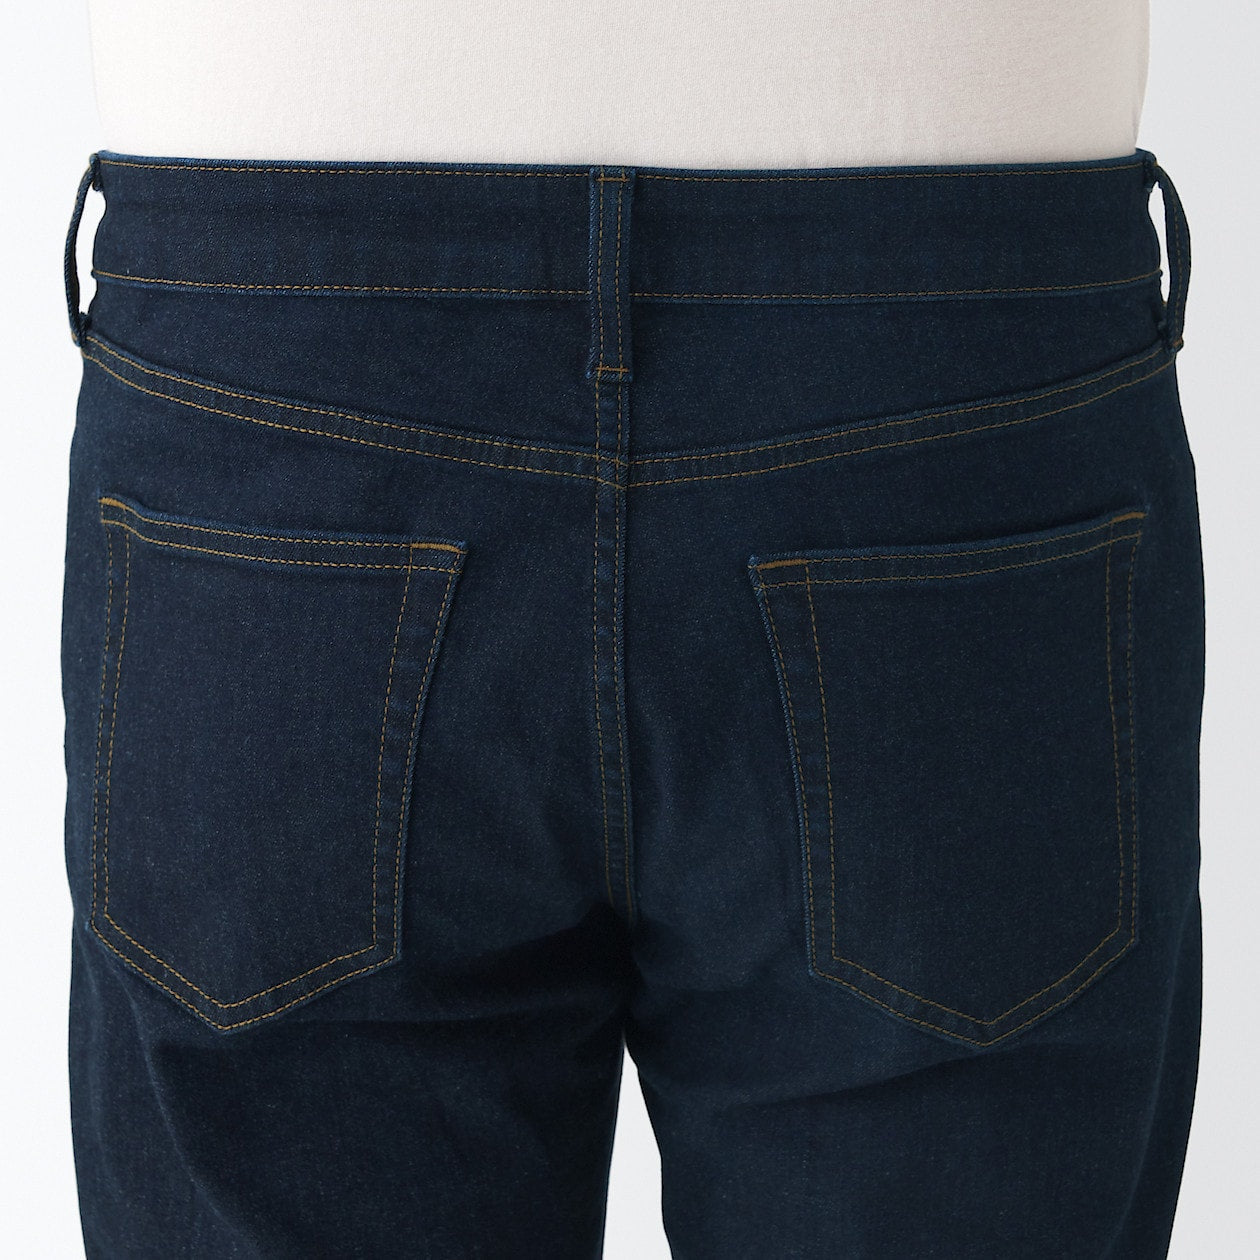 Men's Super Stretch Denim Skinny Pants Dark Navy (L 30inch / 76cm